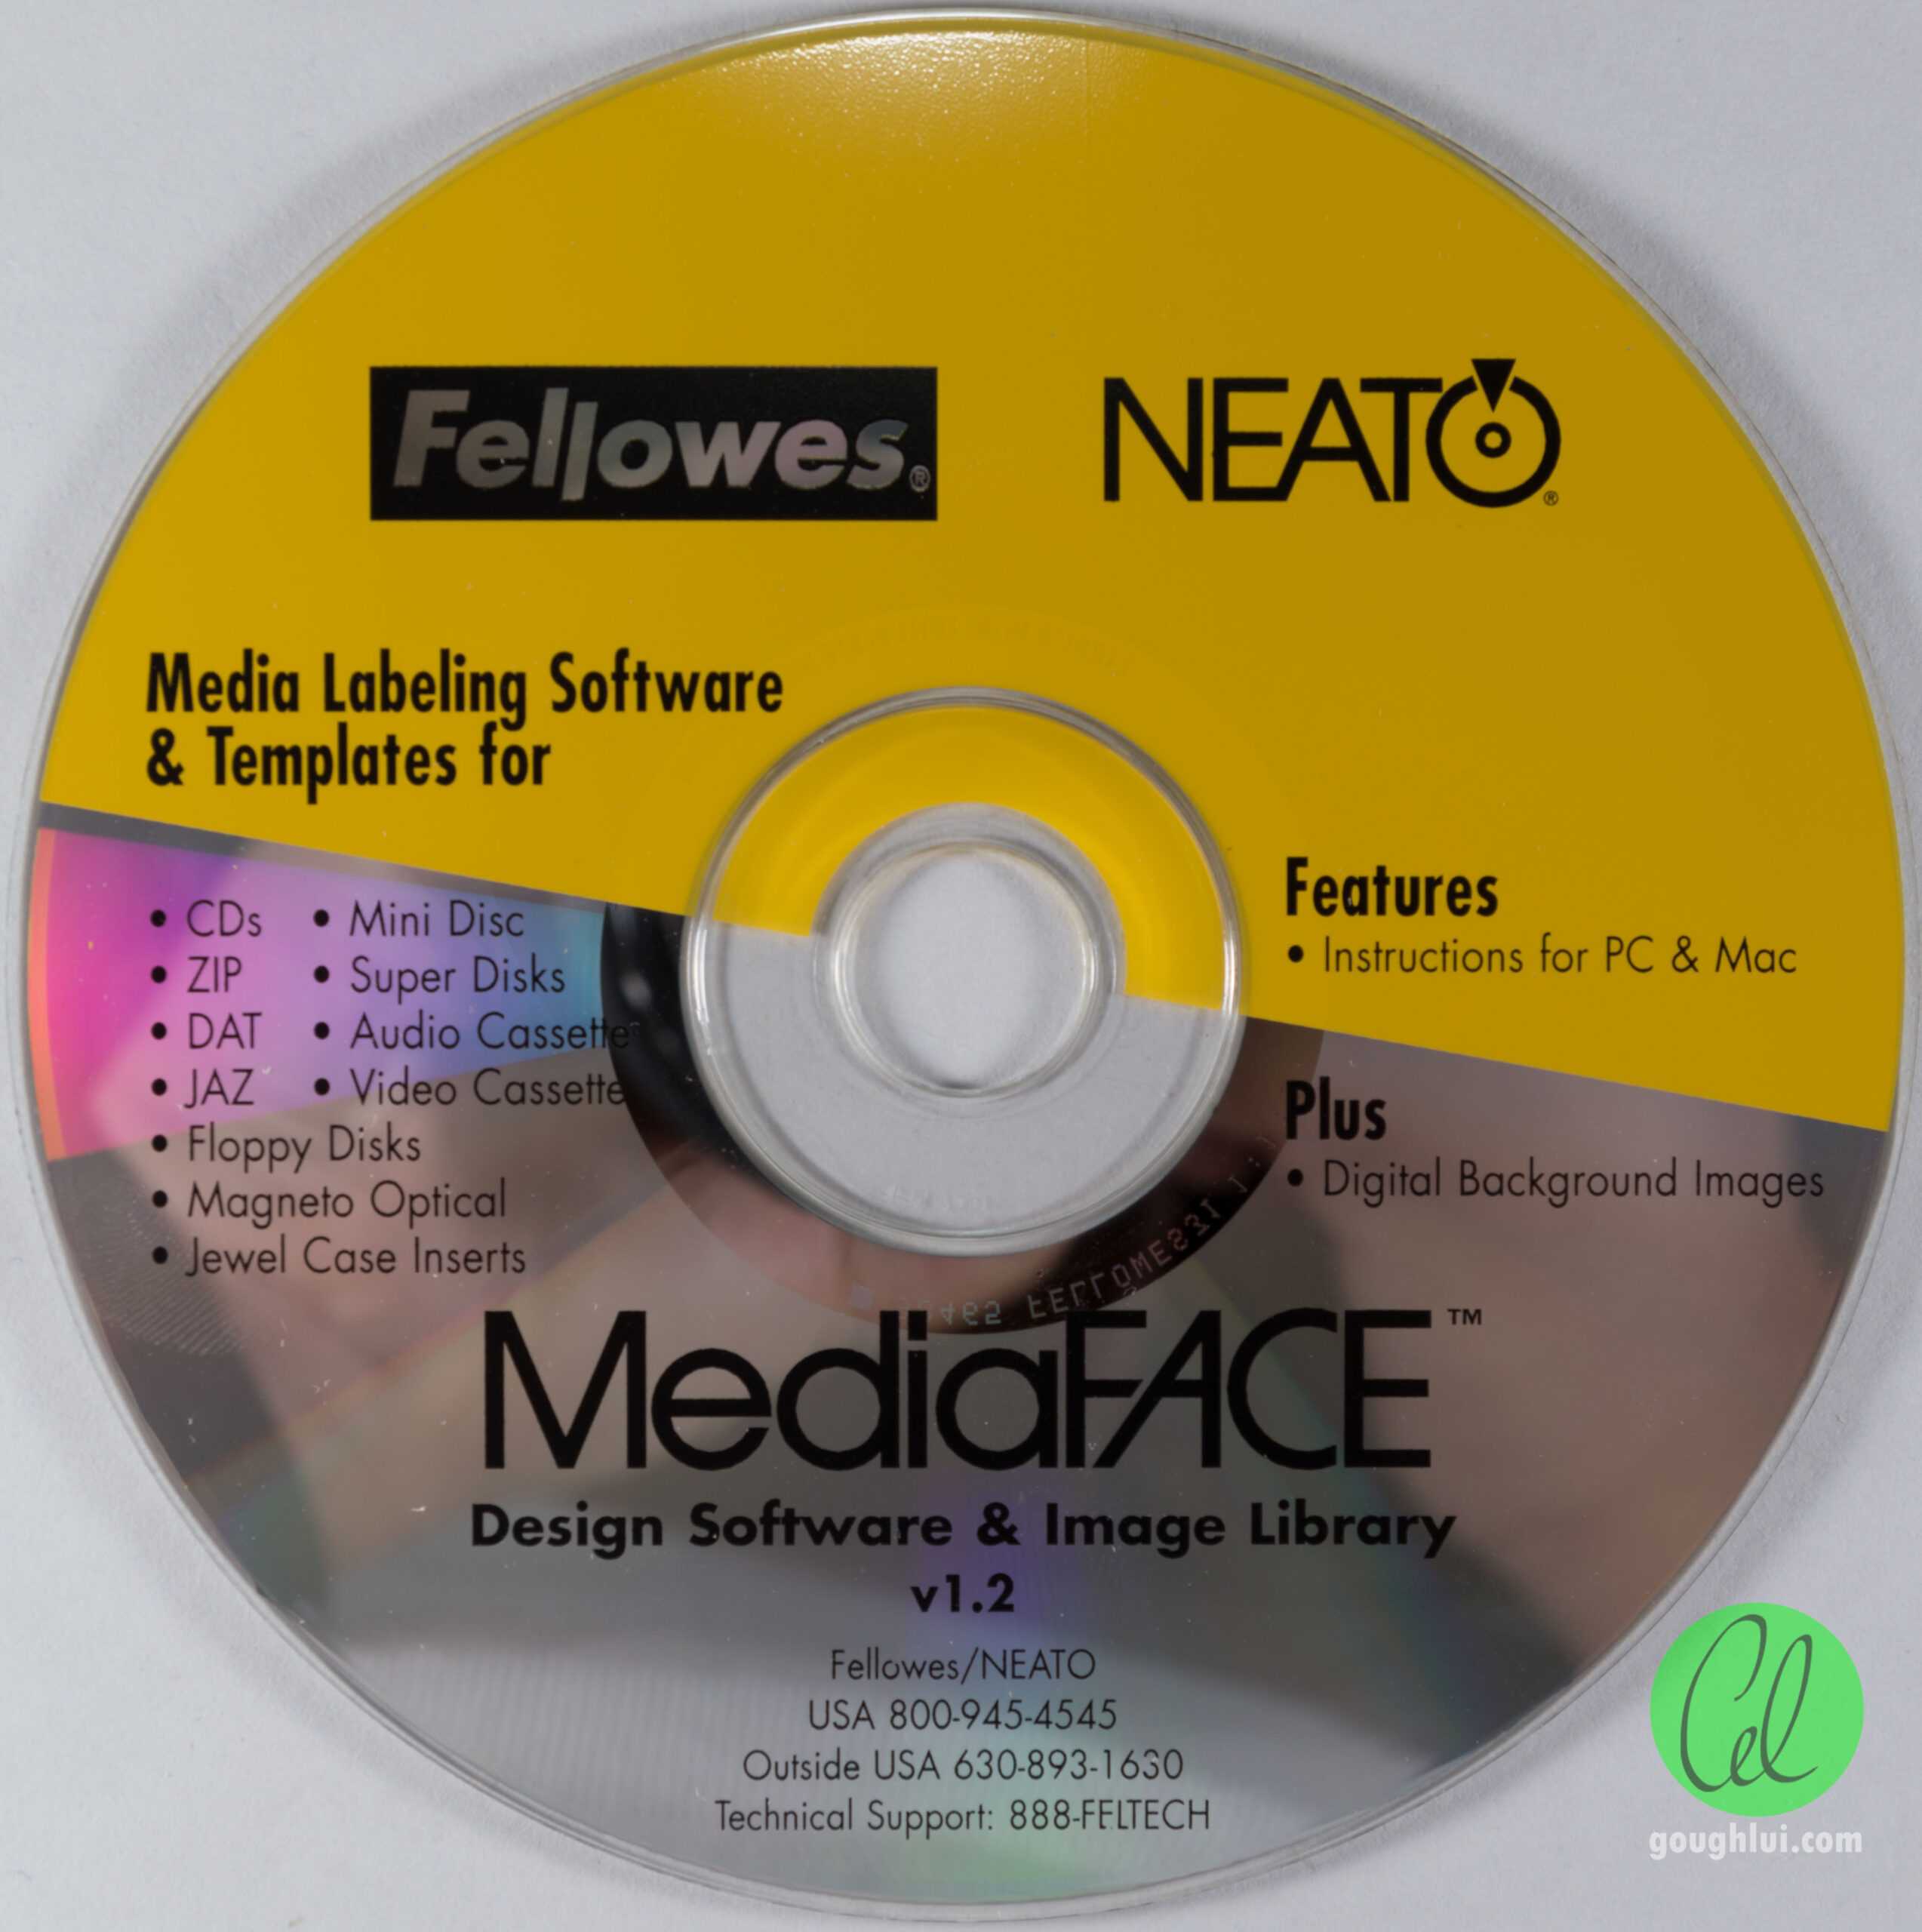 Tech Flashback: Fellowes Neato 2000 Cd Labeler Kit | Gough's For Fellowes Neato Cd Label Template